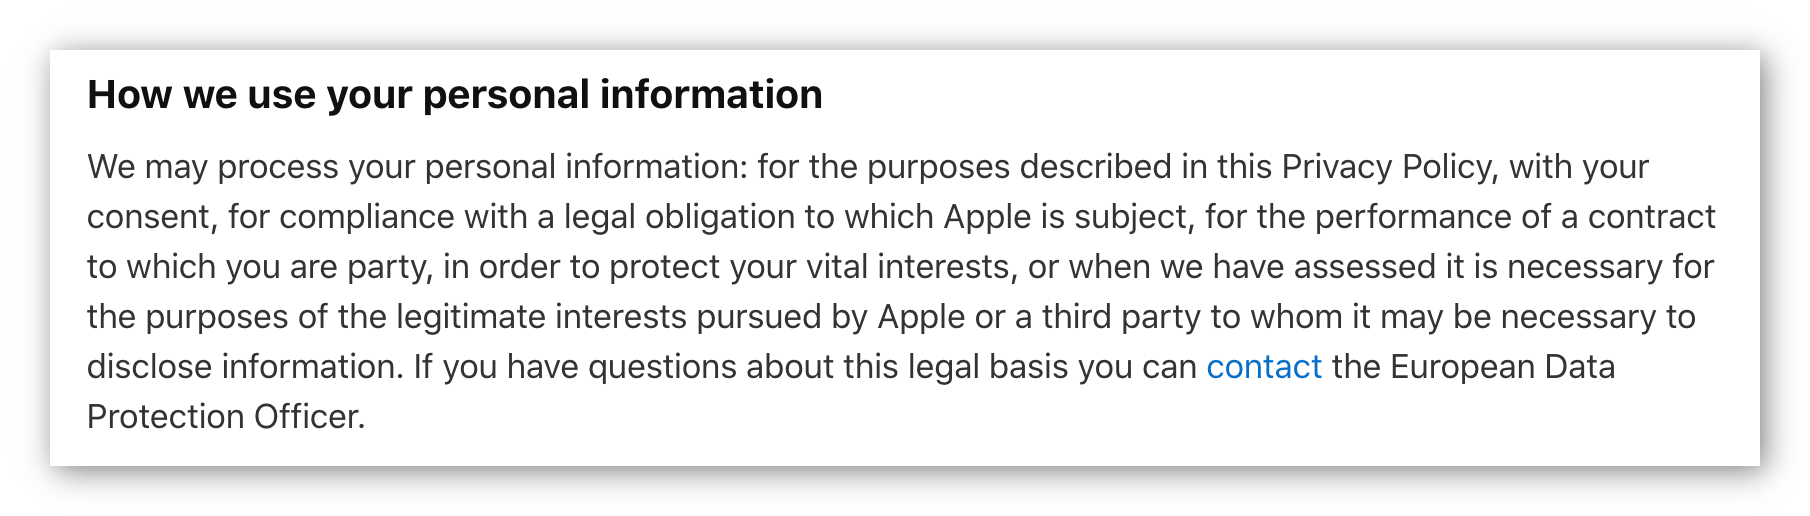 Az Apple adatvédelmi irányelveinek képernyőképe